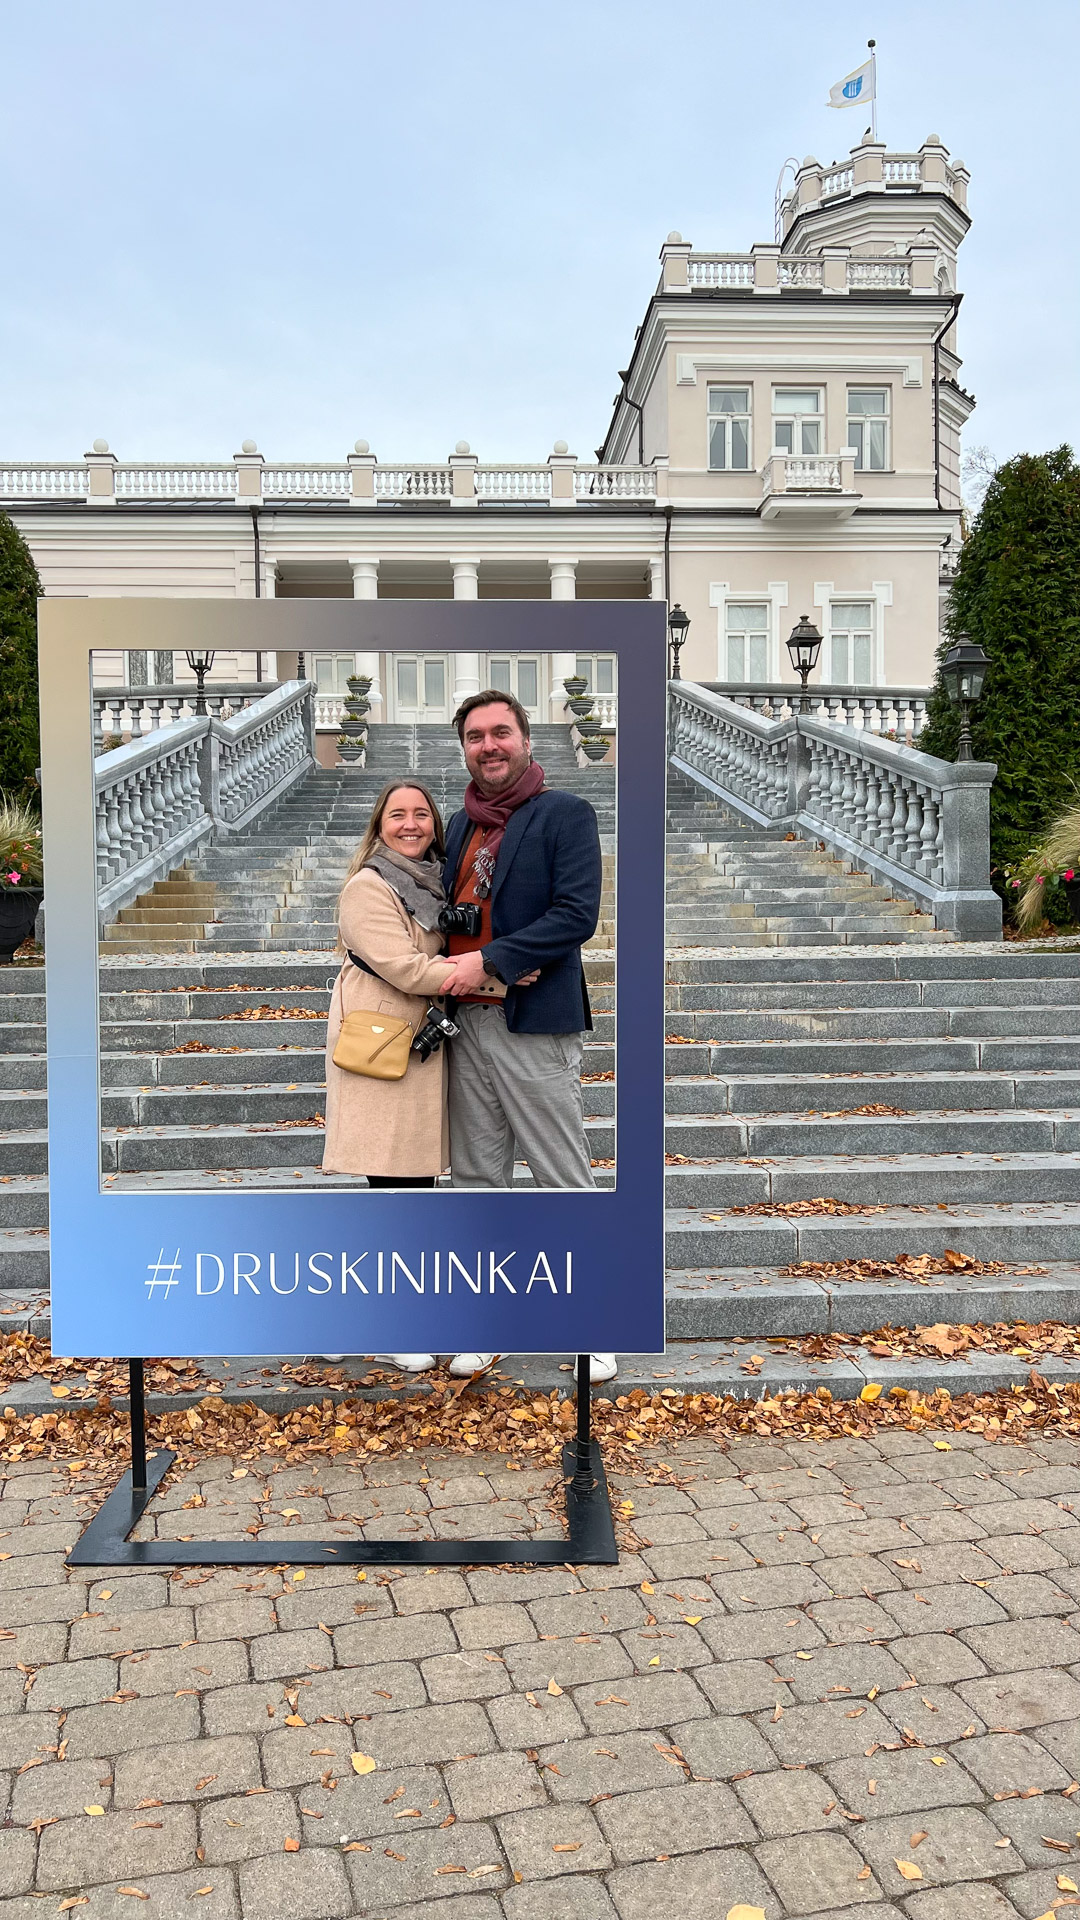 mann og kvinne står inne i en ramme med #druskininkai skrevet på foran et kjent hus